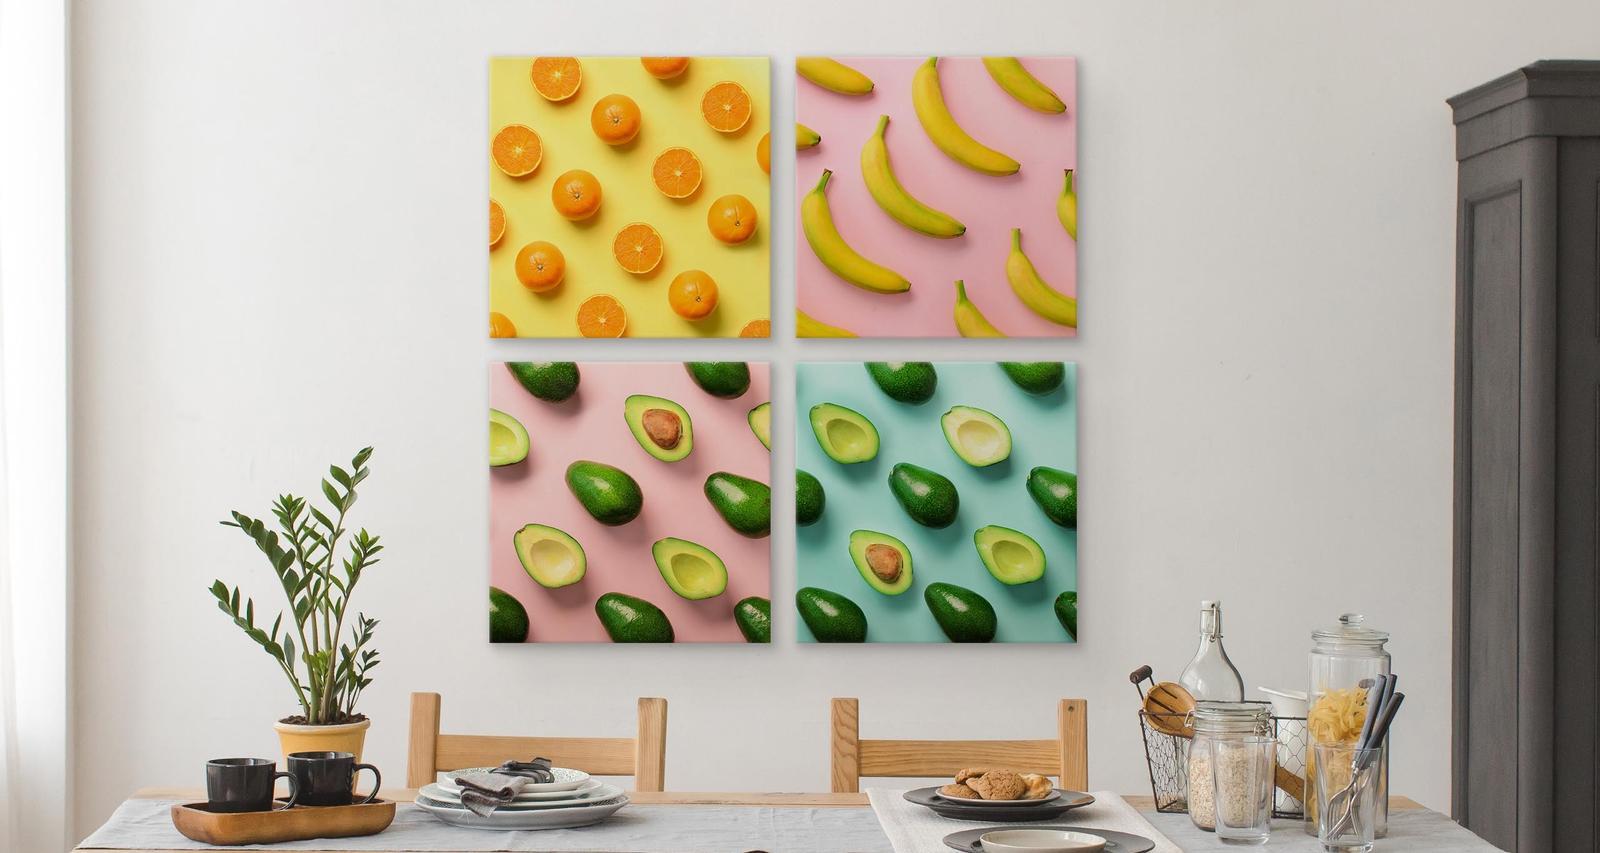 Obrazy SET Do Kuchni OWOCE Cytrusy Awokado Pop-Art Jedzenie 100x100cm nr. 6